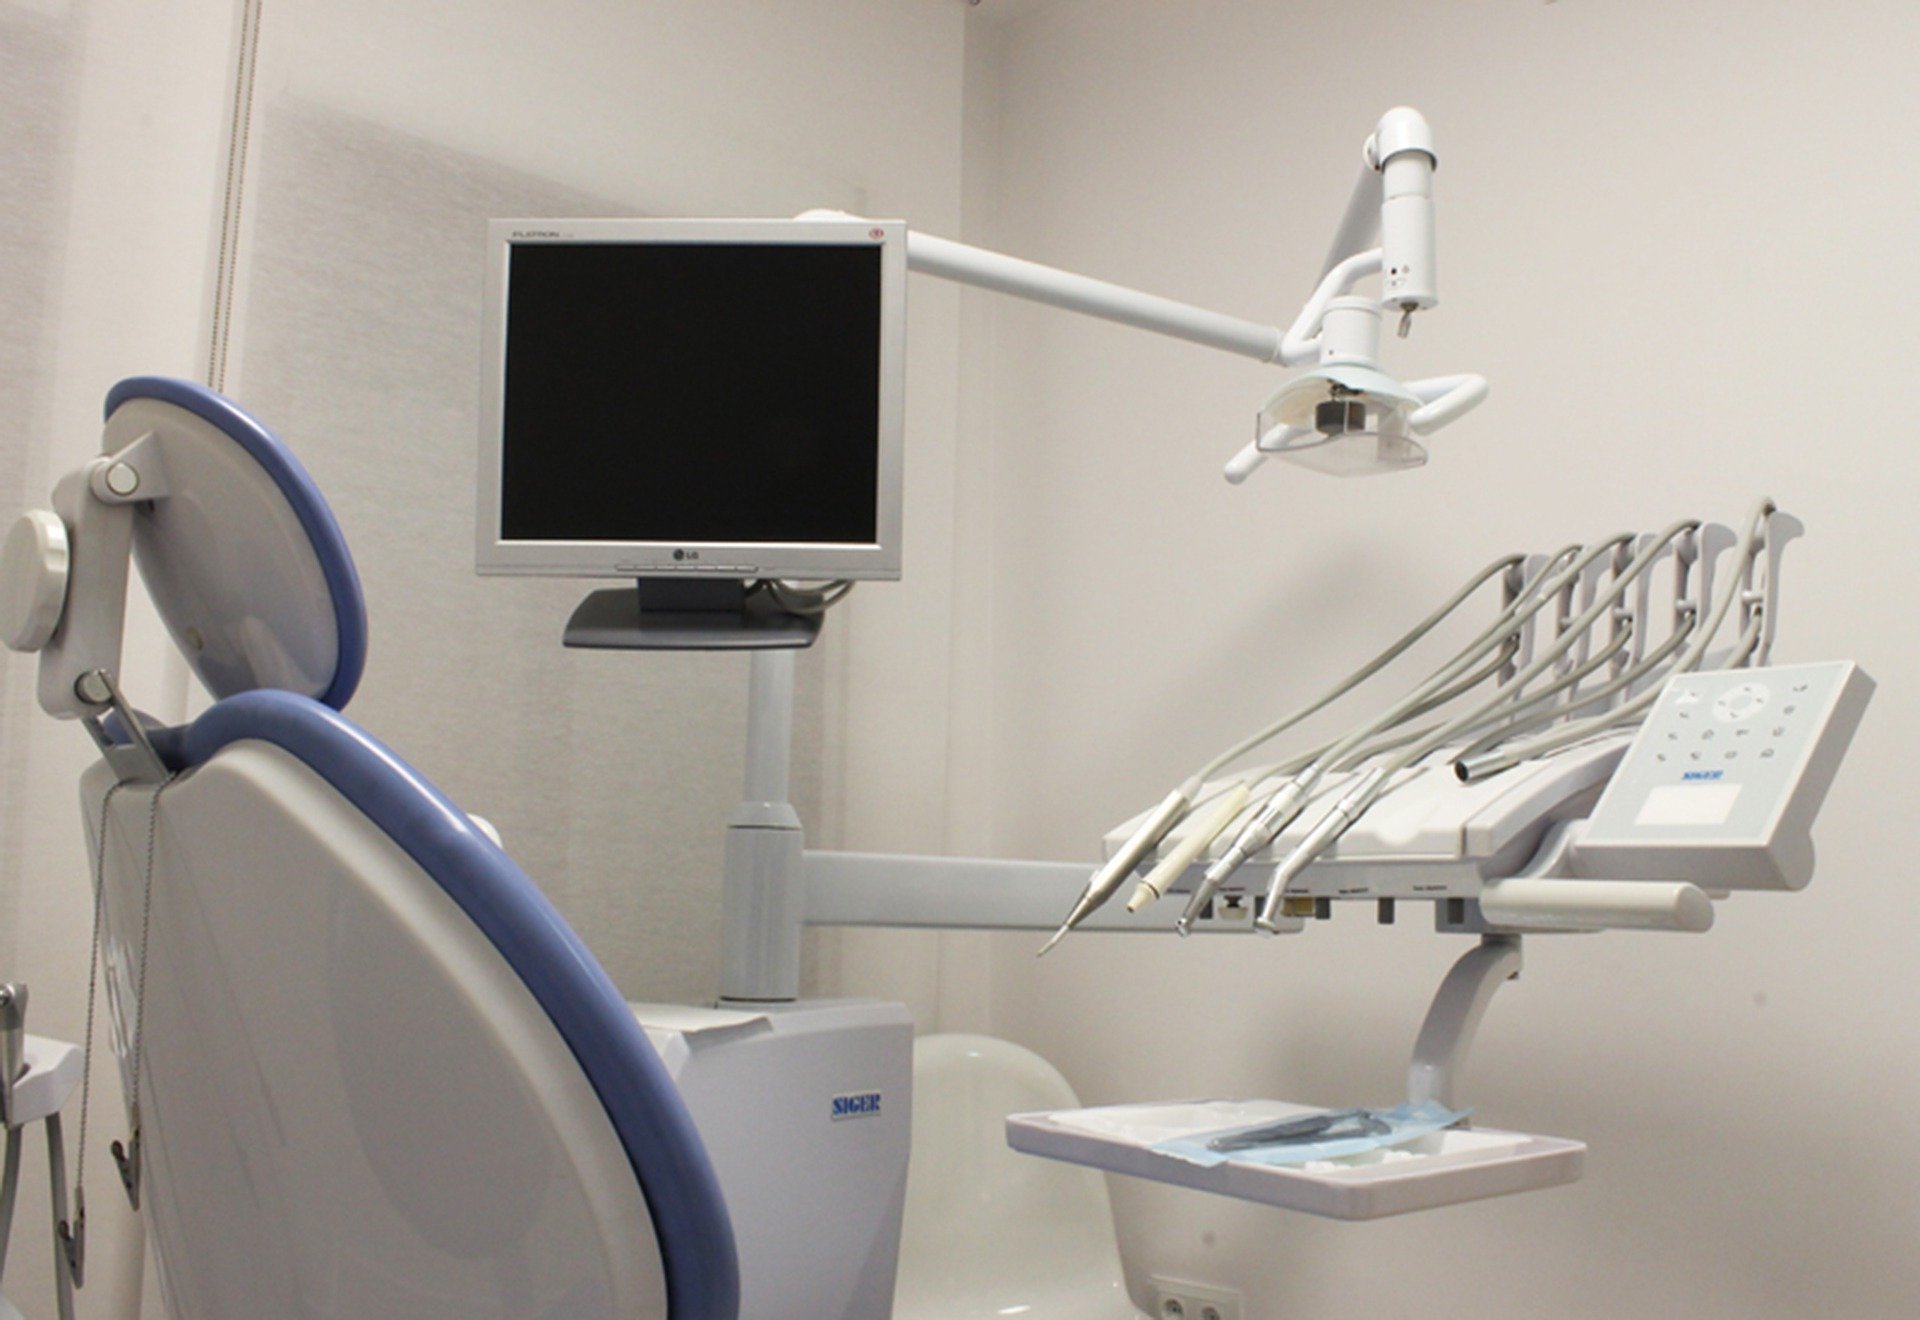 Sundhedsstyrelsens vejledning i forbindelse med genåbning af tandlægeklinikker.